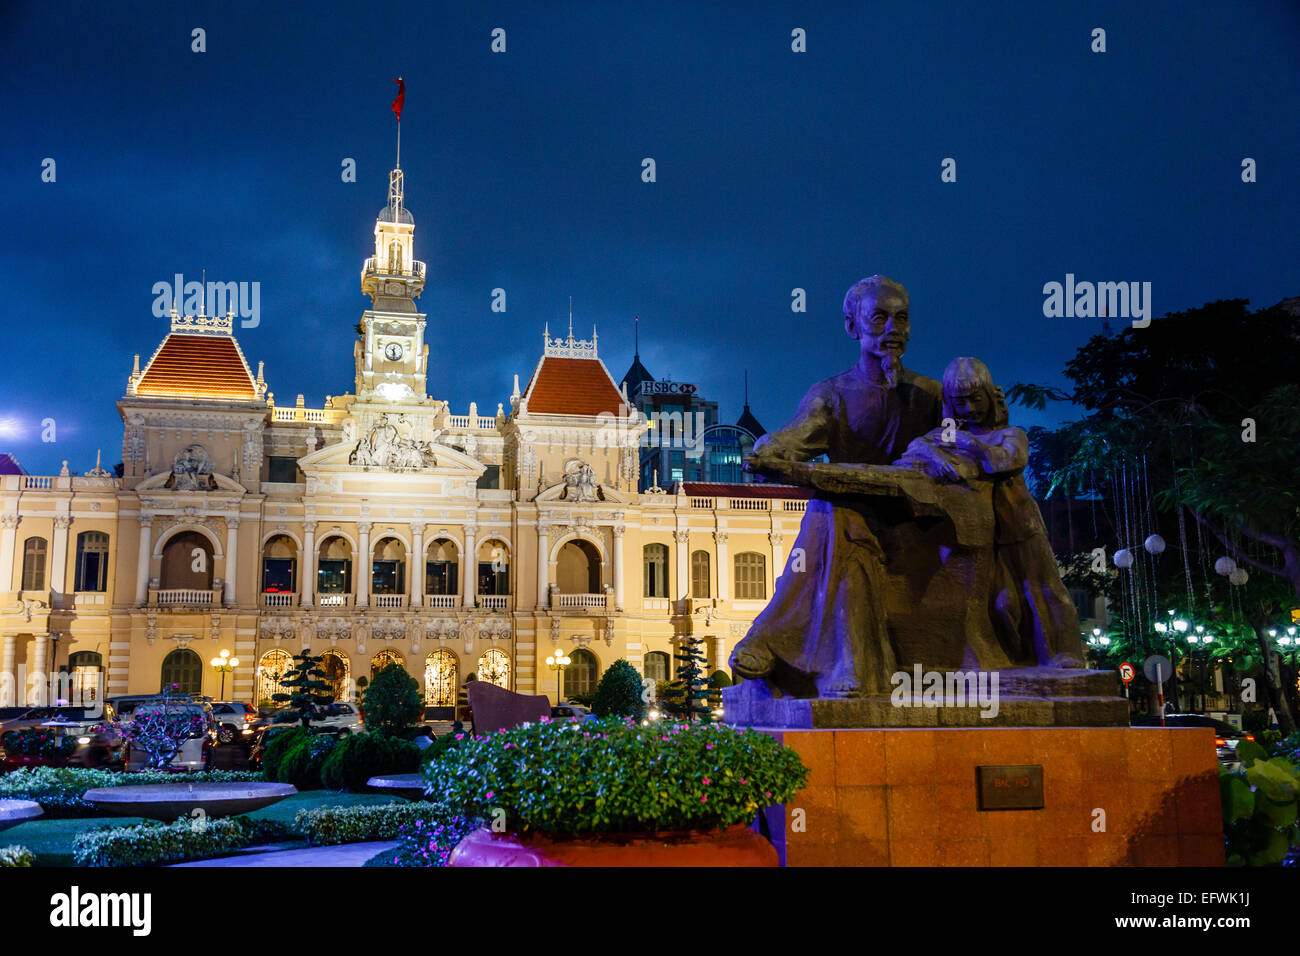 Hôtel de ville de Saigon, Ho Chi Minh Ville (Saigon), Vietnam. Banque D'Images